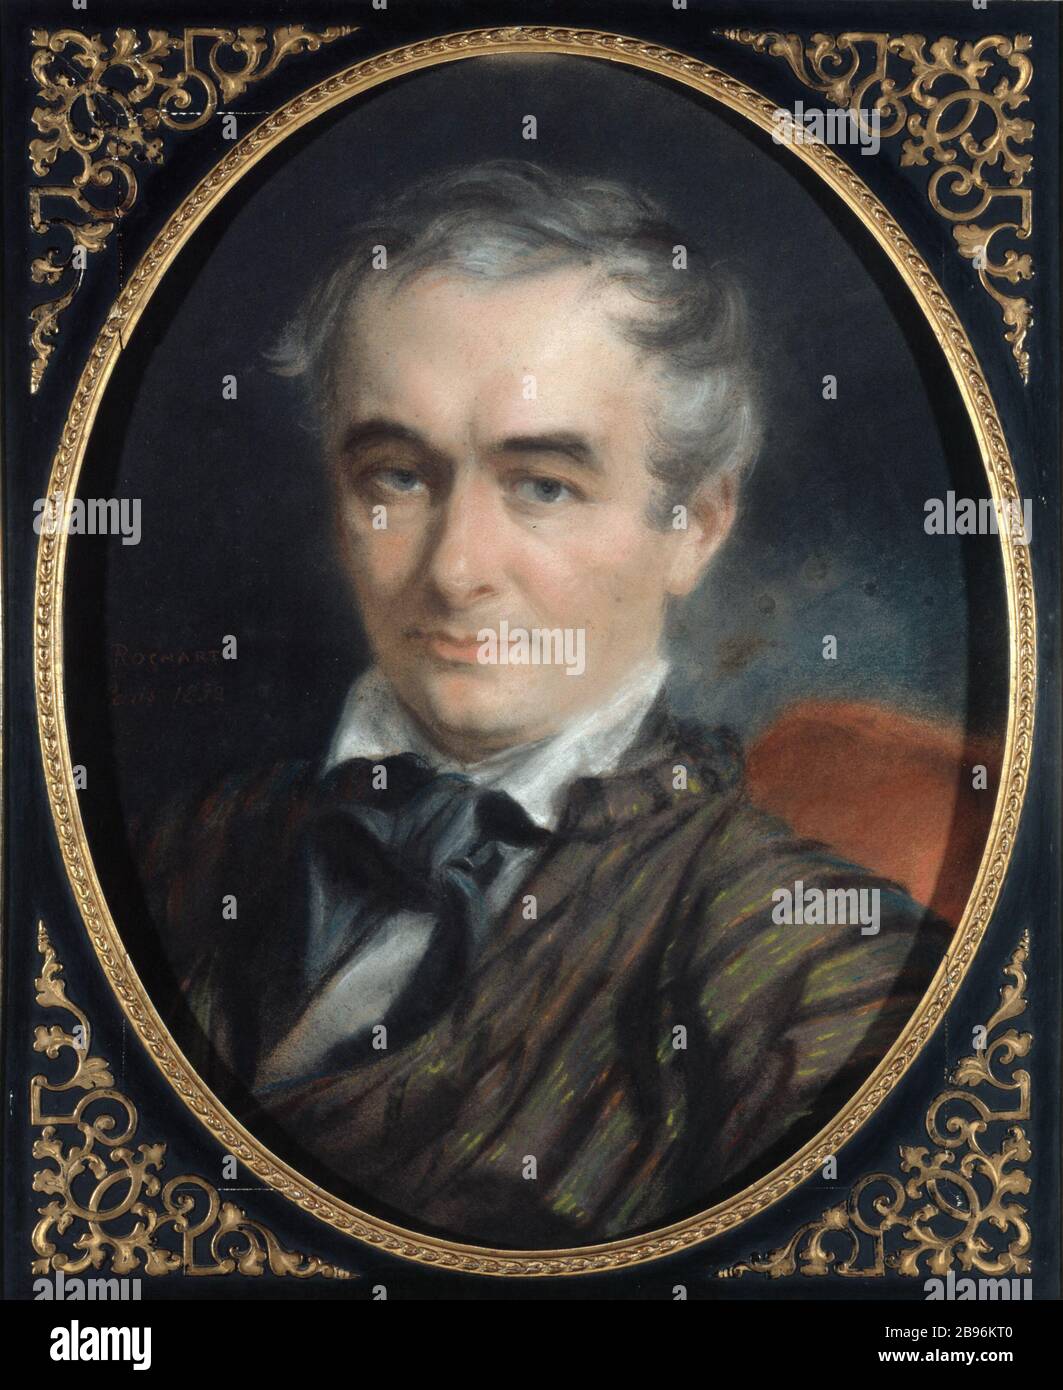 RITRATTO DI PROSPER MERIMEE Simon Jacques Rochart. "Portrait de Prosper Mérimée (1803-1870)". Pastello, 1852. Parigi, musée Carnavalet. Foto Stock